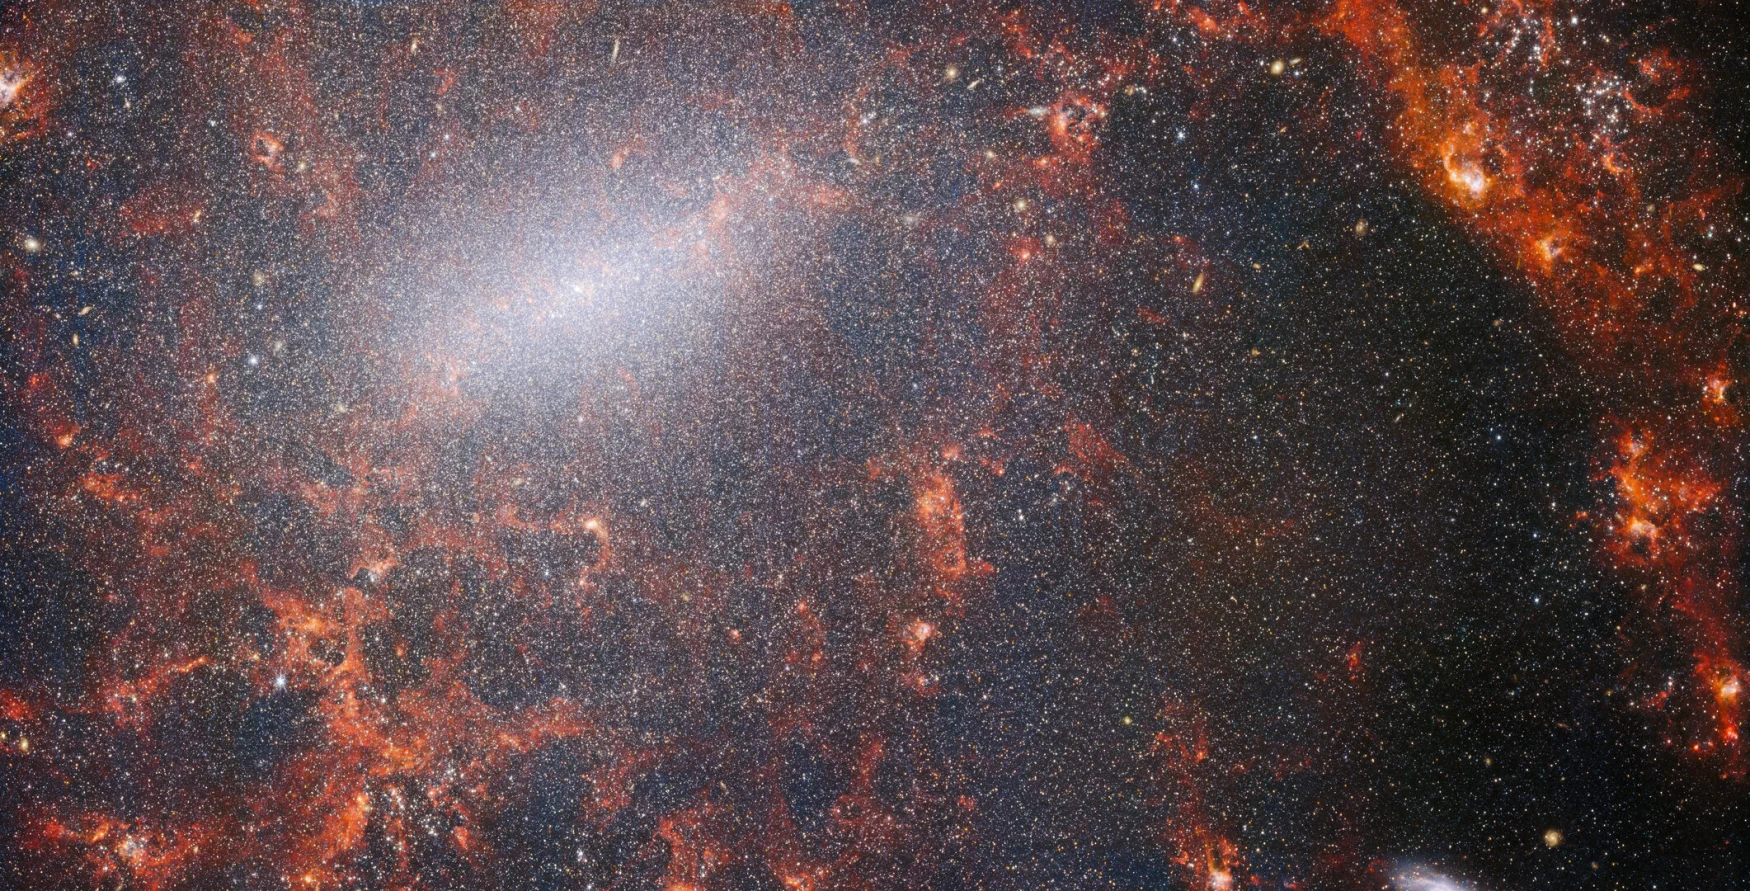 Un entrelacs délicat de poussière et d'amas d'étoiles brillantes traverse cette image du télescope spatial NASA/ESA/CSA James Webb.  Cette vue de l'instrument NIRCam de Webb est parsemée de la population massive d'étoiles de la galaxie, la plus dense le long de sa barre centrale brillante, ainsi que de nuages ​​​​de gaz rouges brûlants illuminés par de jeunes étoiles à l'intérieur.  Ces étoiles scintillantes appartiennent à la galaxie spirale barrée NGC 5068, située à environ 17 millions d'années-lumière de la Terre dans la constellation de la Vierge.  Ce portrait de NGC 5068 fait partie d'une campagne visant à créer un trésor astronomique, un référentiel d'observations de la formation d'étoiles dans les galaxies voisines.  Les joyaux précédents de cette collection peuvent être vus ici et ici.  Ces observations sont particulièrement précieuses pour les astronomes pour deux raisons.  La première est que la formation des étoiles sous-tend de nombreux domaines de l'astronomie, de la physique du plasma ténu qui se trouve entre les étoiles à l'évolution de galaxies entières.  En observant la formation d'étoiles dans les galaxies voisines, les astronomes espèrent lancer des avancées scientifiques majeures avec certaines des premières données disponibles de Webb.  La deuxième raison est que les observations de Webb s'appuient sur d'autres études utilisant des télescopes, notamment le télescope spatial Hubble de la NASA/ESA et certains des observatoires au sol les plus performants au monde.  Webb a recueilli des images de 19 galaxies stellaires proches que les astronomes ont ensuite pu combiner avec des catalogues de Hubble de 10 000 amas d'étoiles, une cartographie spectroscopique de 20 000 nébuleuses d'émission stellaires du Very Large Telescope (VLT) et des observations de 12 000 nébuleuses sombres. , nuages ​​moléculaires denses identifiés par l'Atacama Large Millimeter/submillimeter Array (ALMA).  Ces observations couvrent le spectre électromagnétique et offrent aux astronomes une occasion sans précédent de reconstituer les détails de la formation des étoiles.  Cette image proche infrarouge de la galaxie est remplie par l'énorme rassemblement d'étoiles plus anciennes qui constituent le noyau de NGC 5068. La vision aiguë de NIRCam permet aux astronomes de regarder à travers le gaz et la poussière de la galaxie pour examiner de près ses étoiles.  Des nuages ​​de poussière denses et brillants se trouvent le long de la trajectoire des bras spiraux : ce sont des régions H II, des collections d'hydrogène gazeux où de nouvelles étoiles se forment.  Les étoiles jeunes et énergiques ionisent l'hydrogène qui les entoure ce qui, combiné à l'émission de poussières chaudes, crée cette lueur rougeâtre.  Les régions H II forment une cible fascinante pour les astronomes, et les instruments de Webb sont les outils parfaits pour les examiner, aboutissant à cette image. [Image Description: A close-in image of a spiral galaxy, showing its core and part of a spiral arm. At this distance thousands upon thousands of tiny stars that make up the galaxy can be seen. The stars are most dense in a whitish bar that forms the core, and less dense out from that towards the arm. Bright red gas clouds follow the twist of the galaxy and the spiral arm.] Liens NGC 5068 (image NIRCam+MIRI) NGC 5068 (image MIRI) Slider Tool (images MIRI et NIRCam) Vidéo : Vue panoramique de NGC 5068 Vidéo : Vues de Webb sur NGC 5068 (images MIRI et NIRCam) Vidéo : Zoom sur NGC 5068 